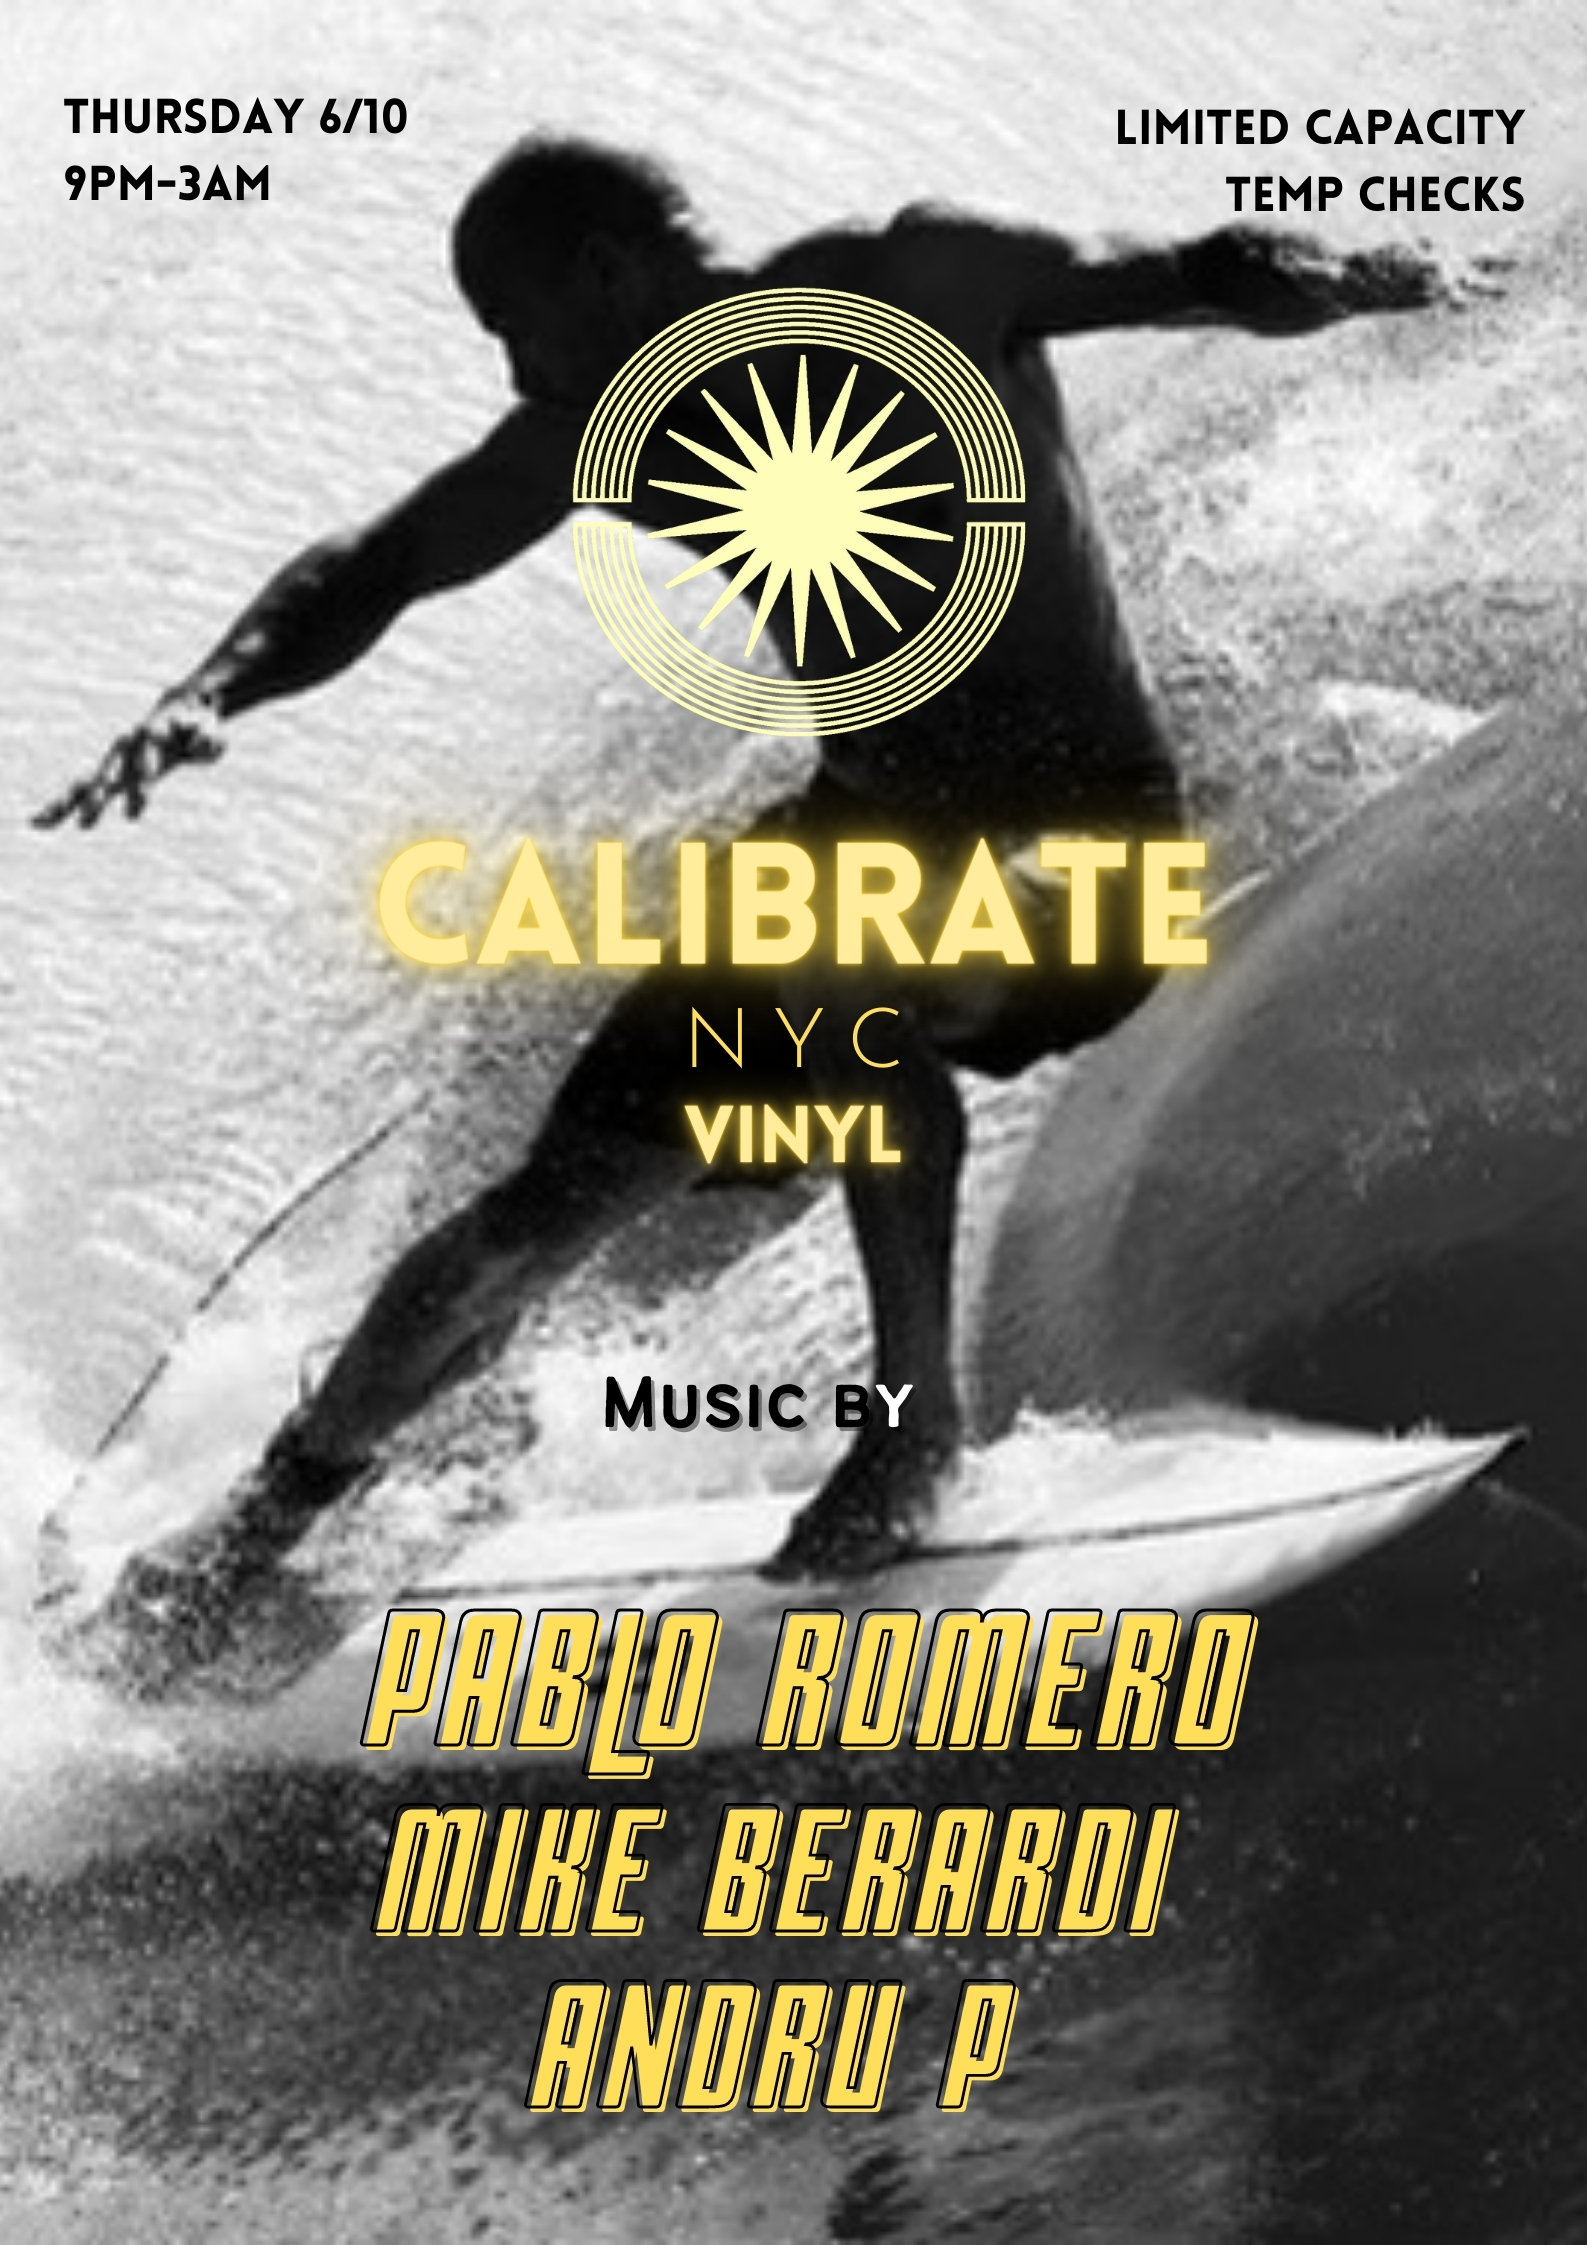 Calibrate NYC - Pablo Romero, Mike Berardi, Andru P